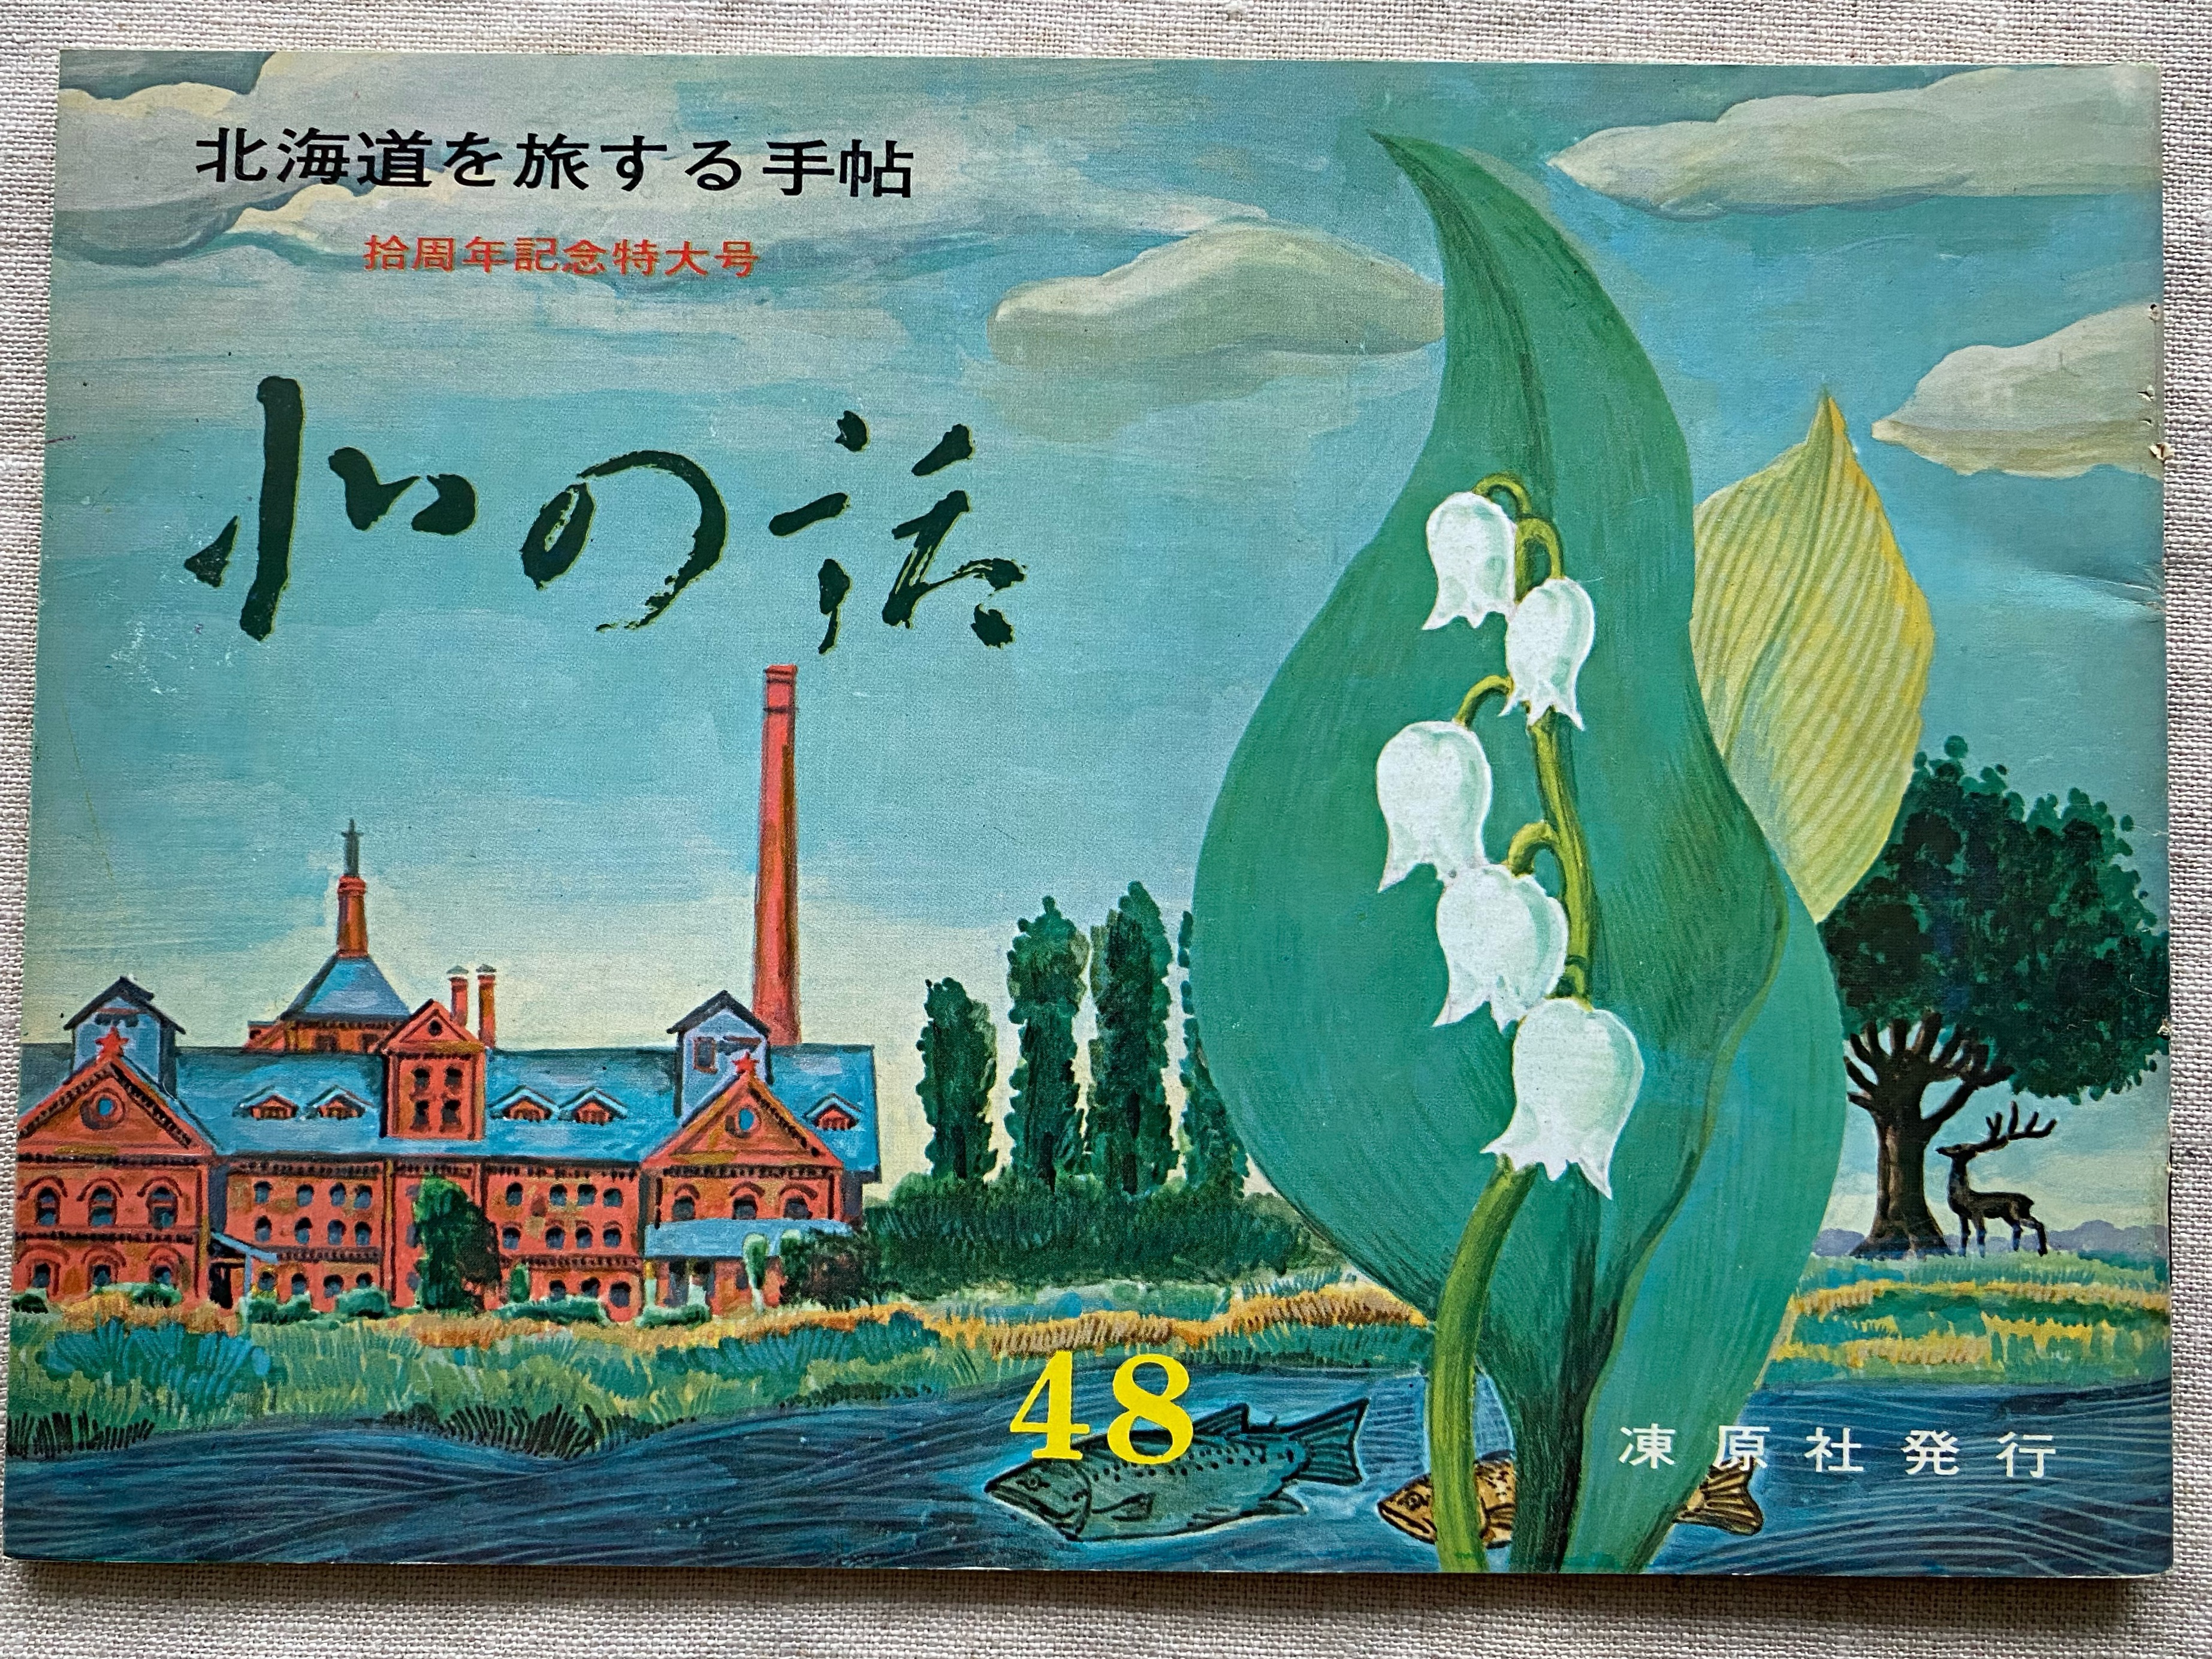 「北の話」48号。表紙には、スズランの花、赤レンガの工場、ポプラ並木が描かれている。